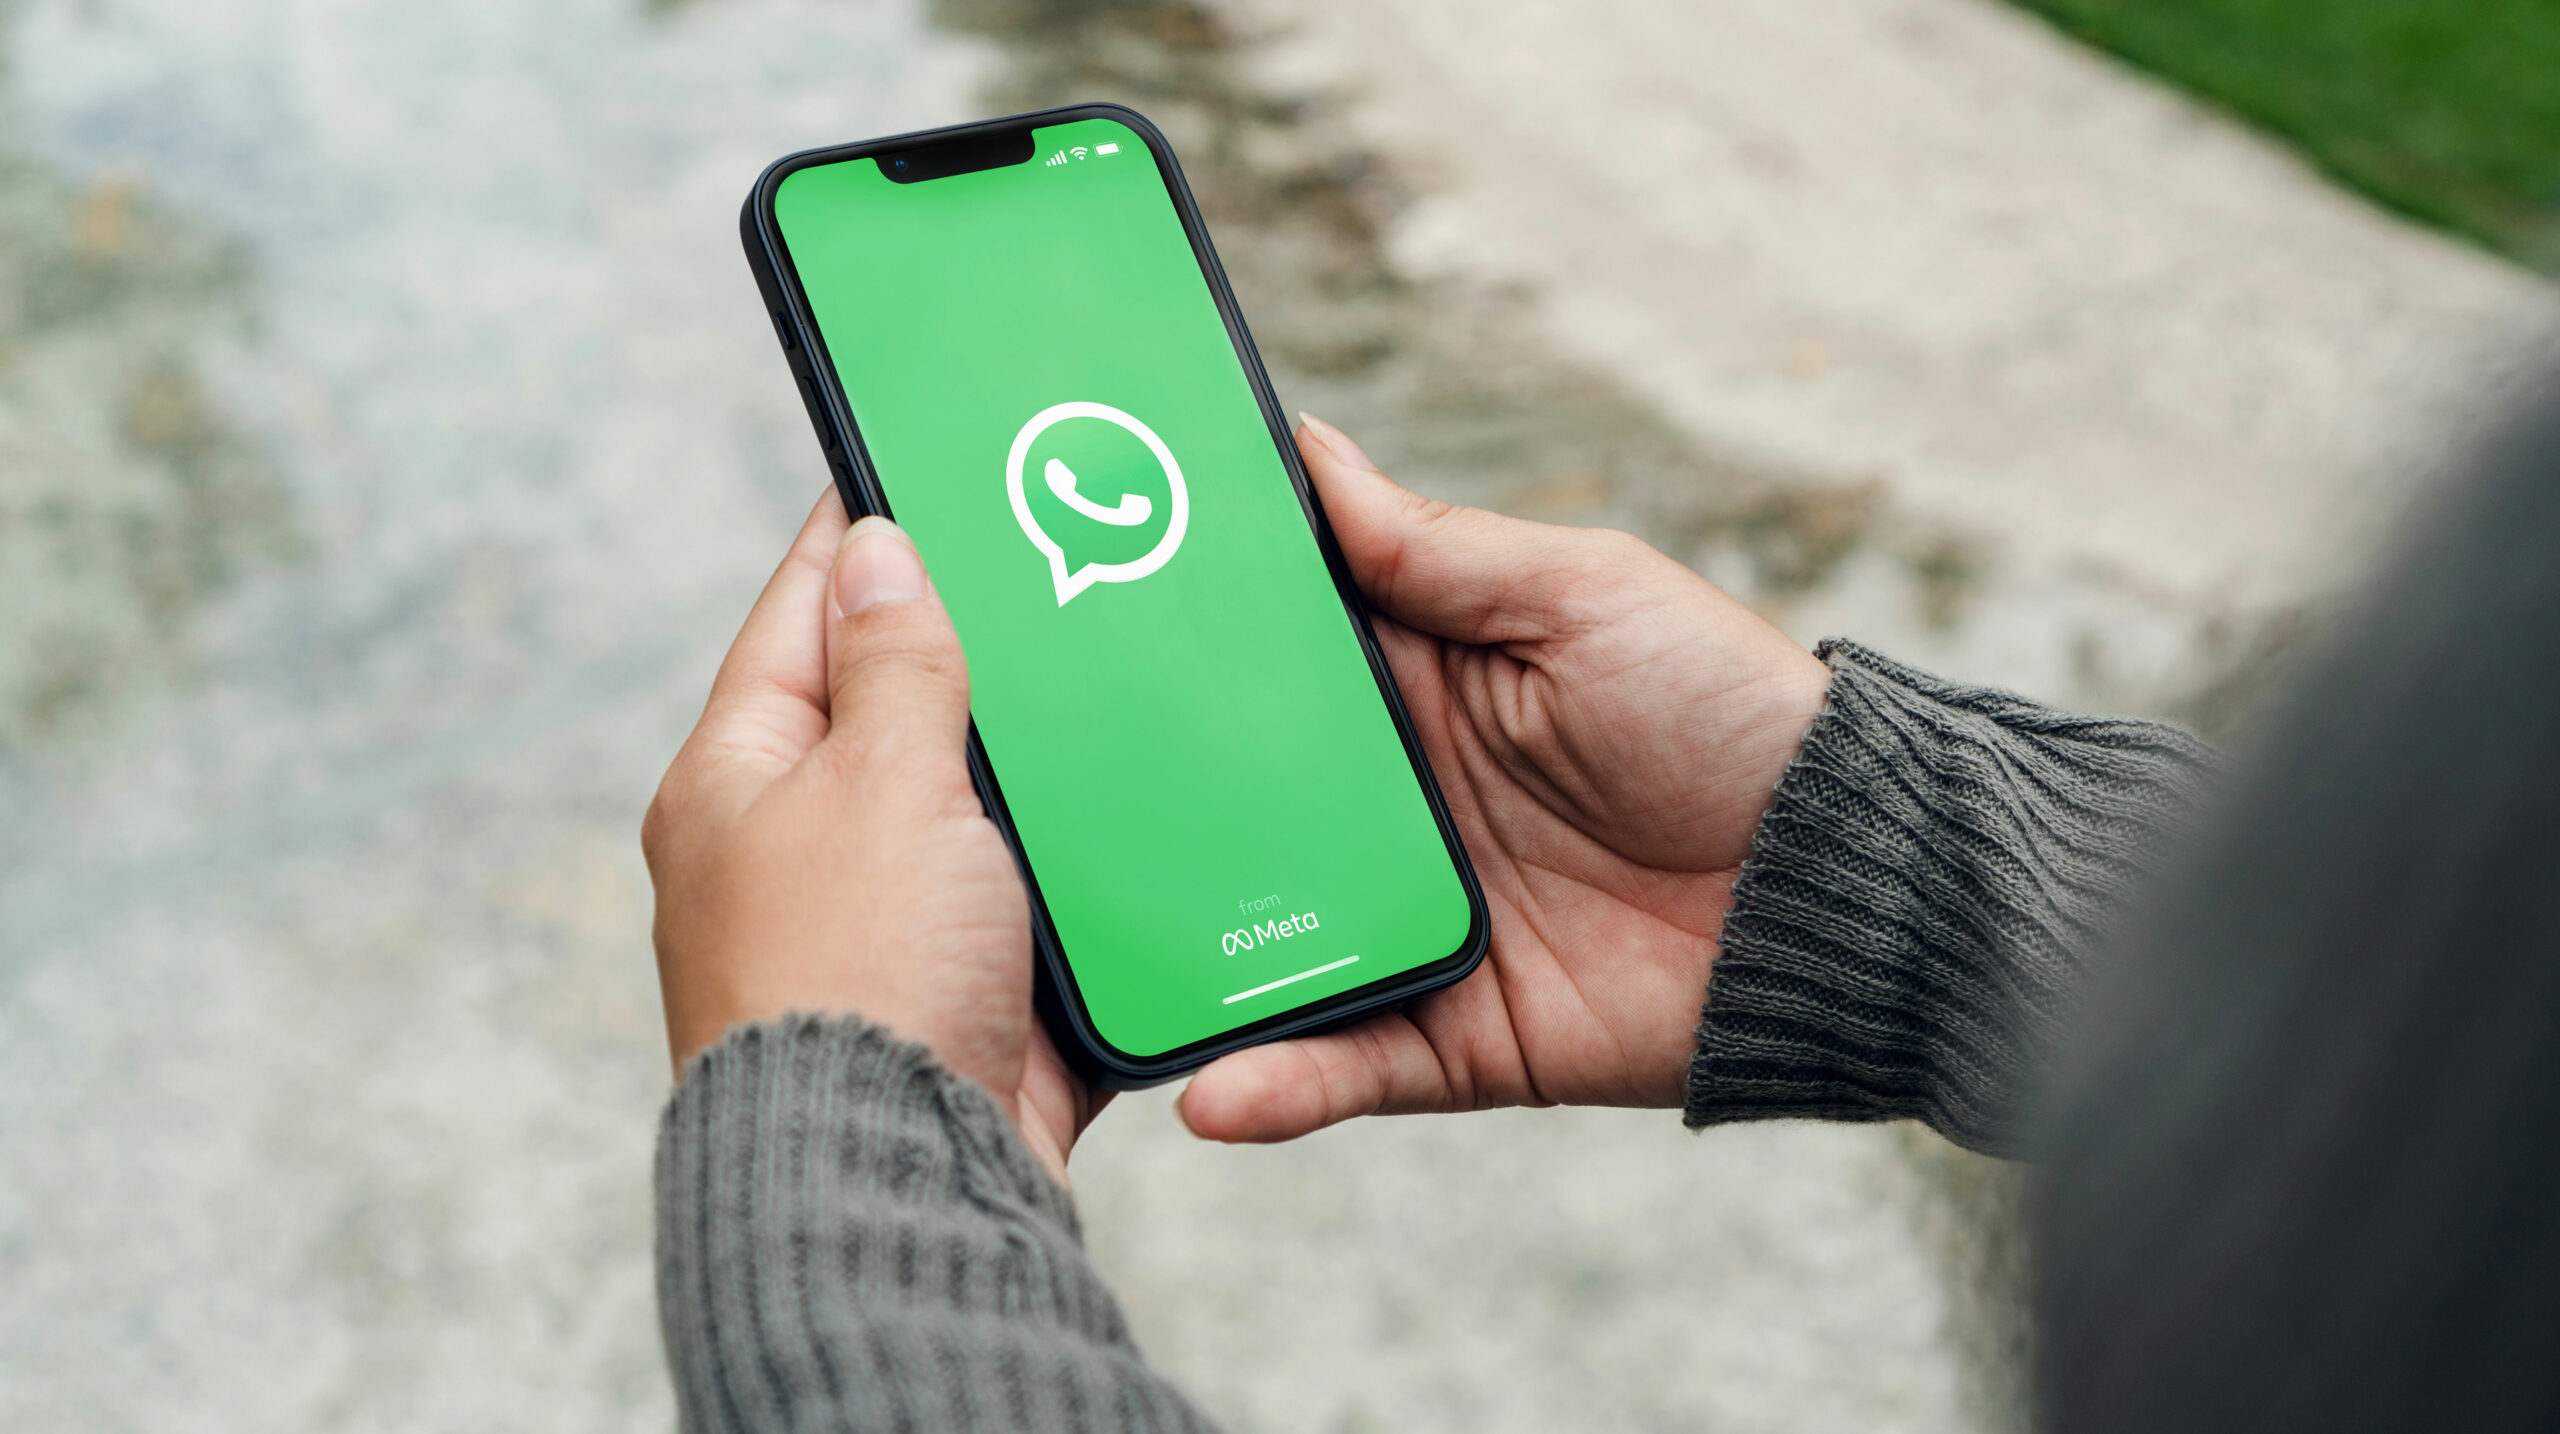 Inovasi Terbaru: Chatbot AI WhatsApp dalam Proses Uji Coba